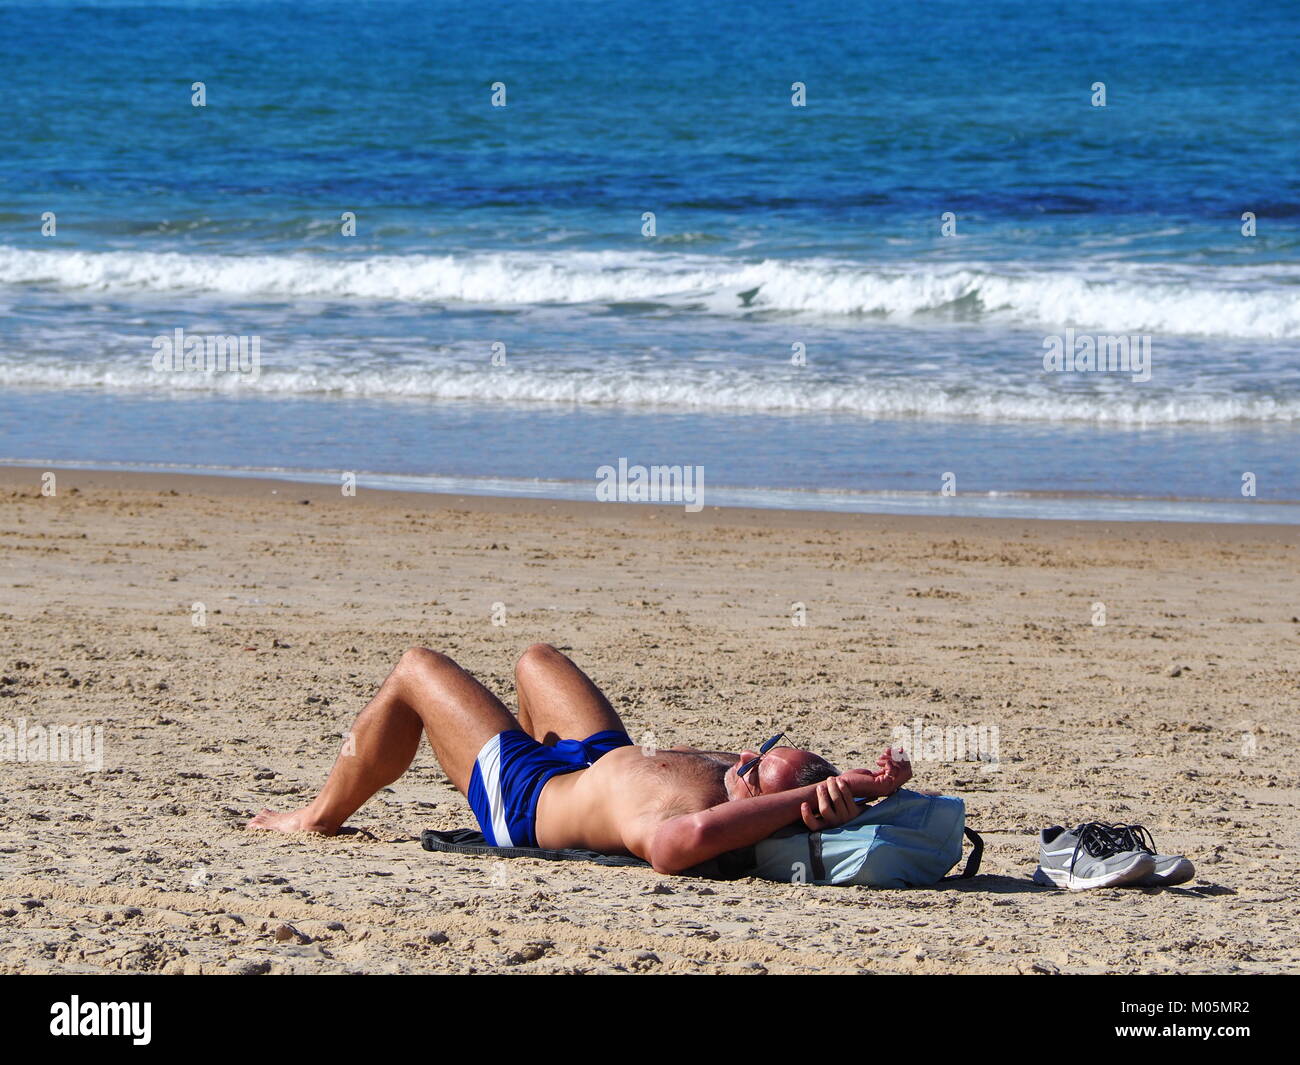 Ricreazione in vacanza - un uomo sta diventando tan sul sdraiati al sole in spiaggia Foto Stock